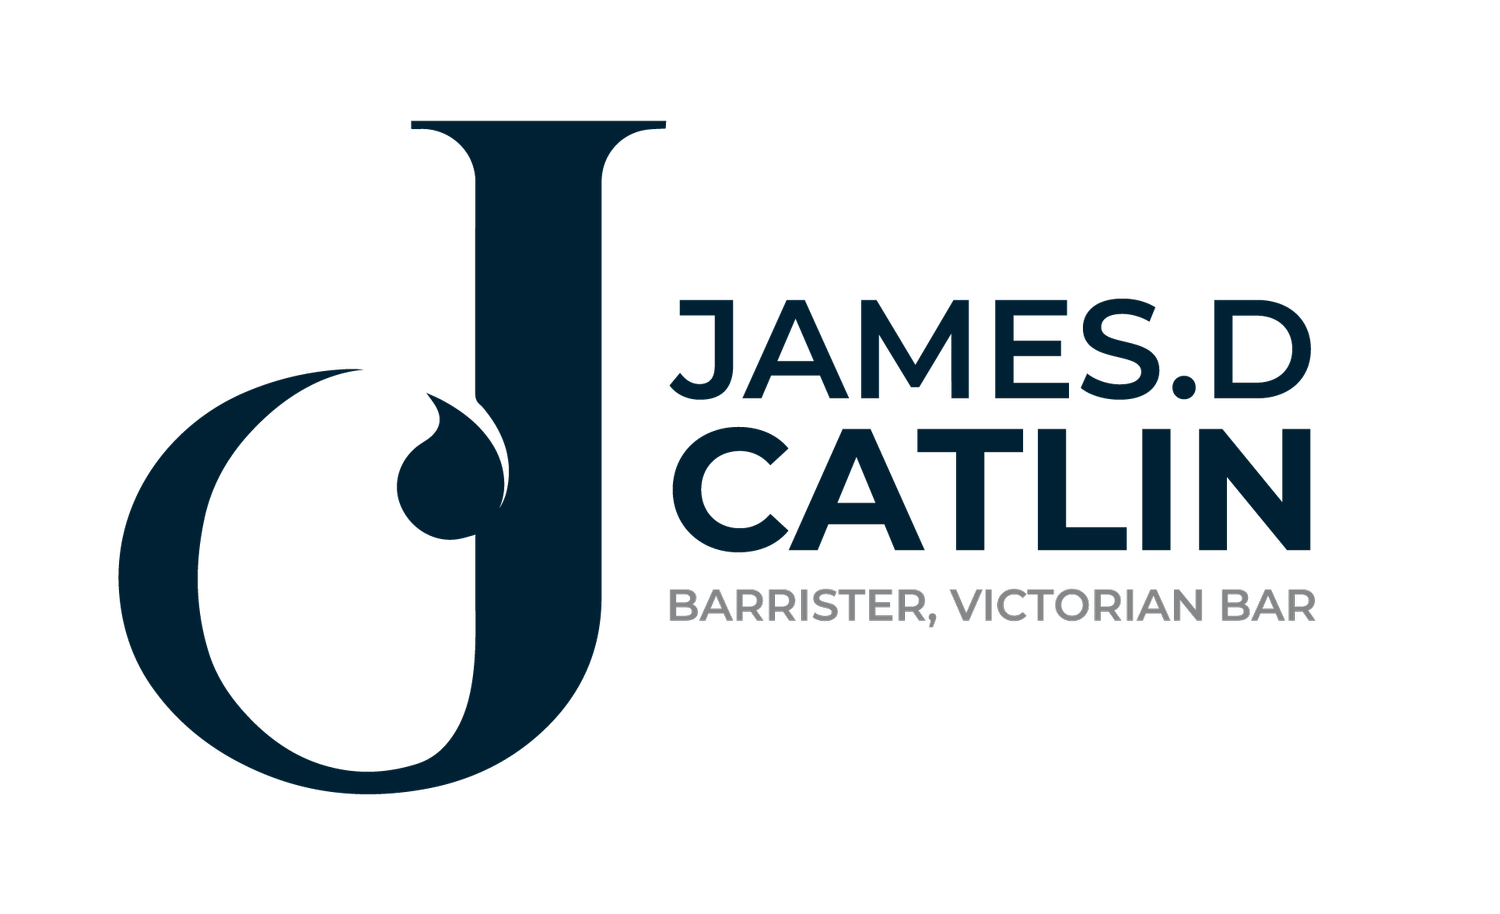 James Catlin